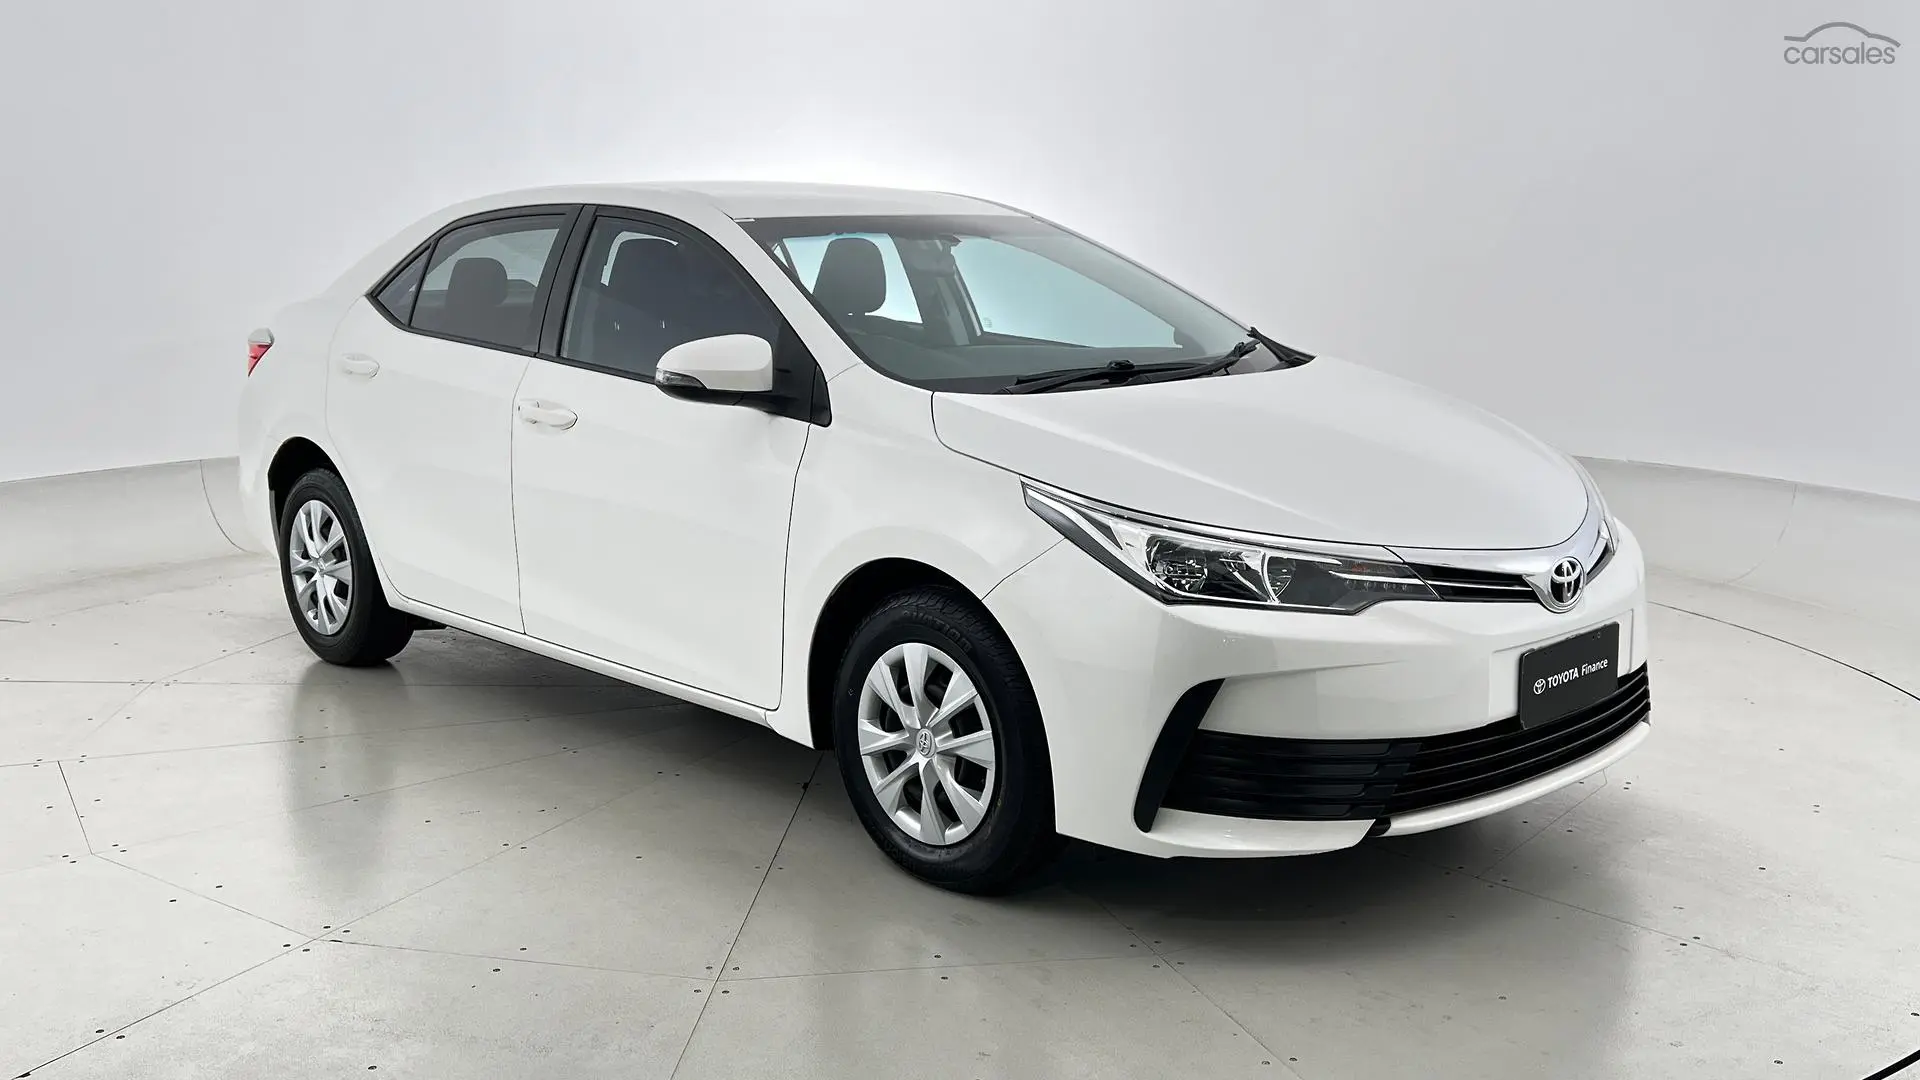 2019 Toyota Corolla Image 1